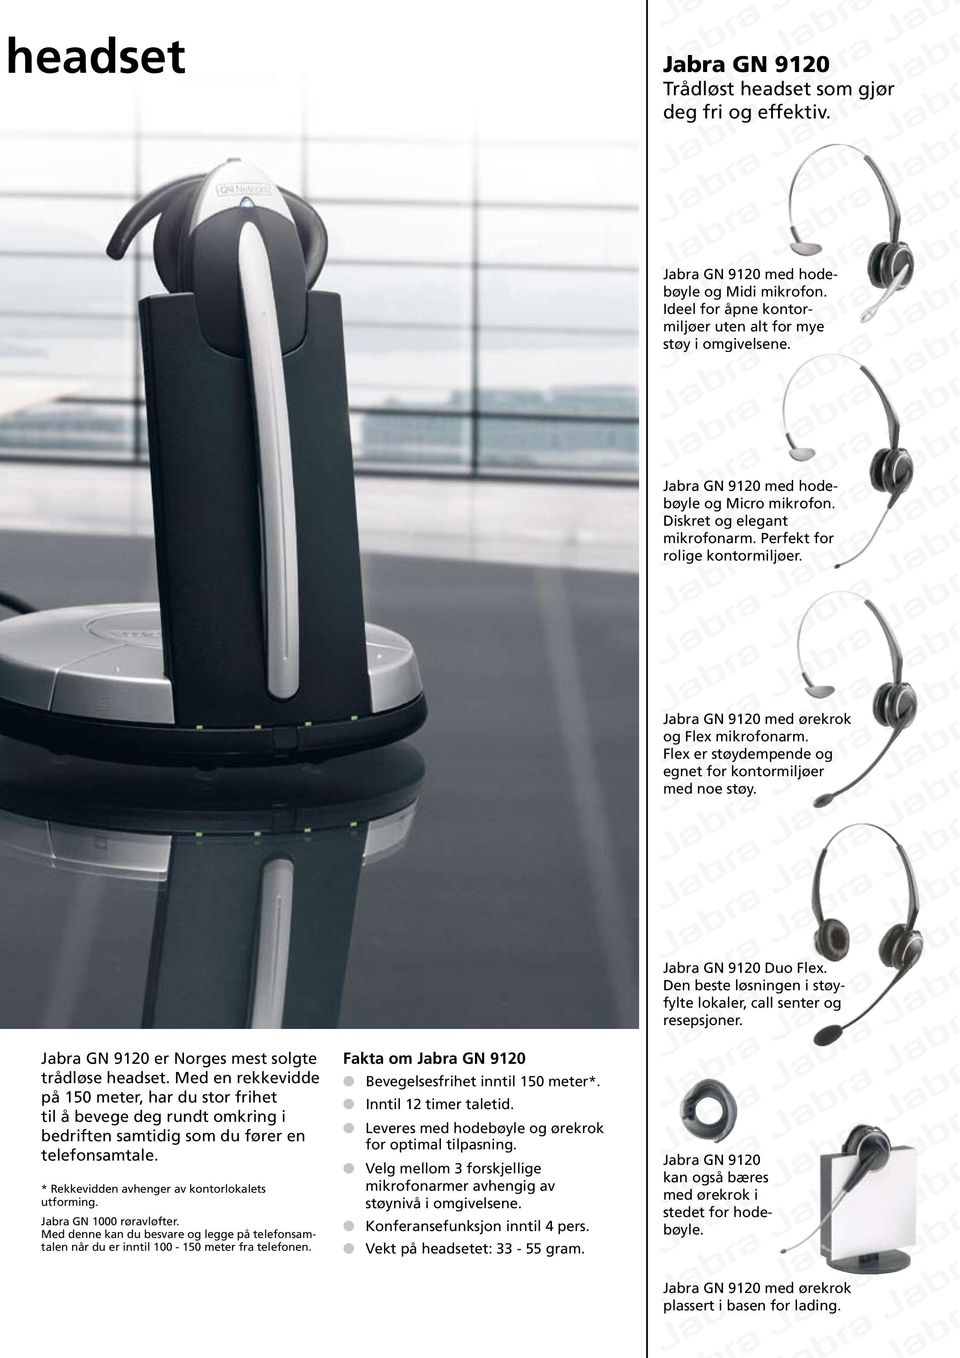 Flex er støydempende og egnet for kontormiljøer med noe støy. Jabra GN 9120 er Norges mest solgte trådløse headset.